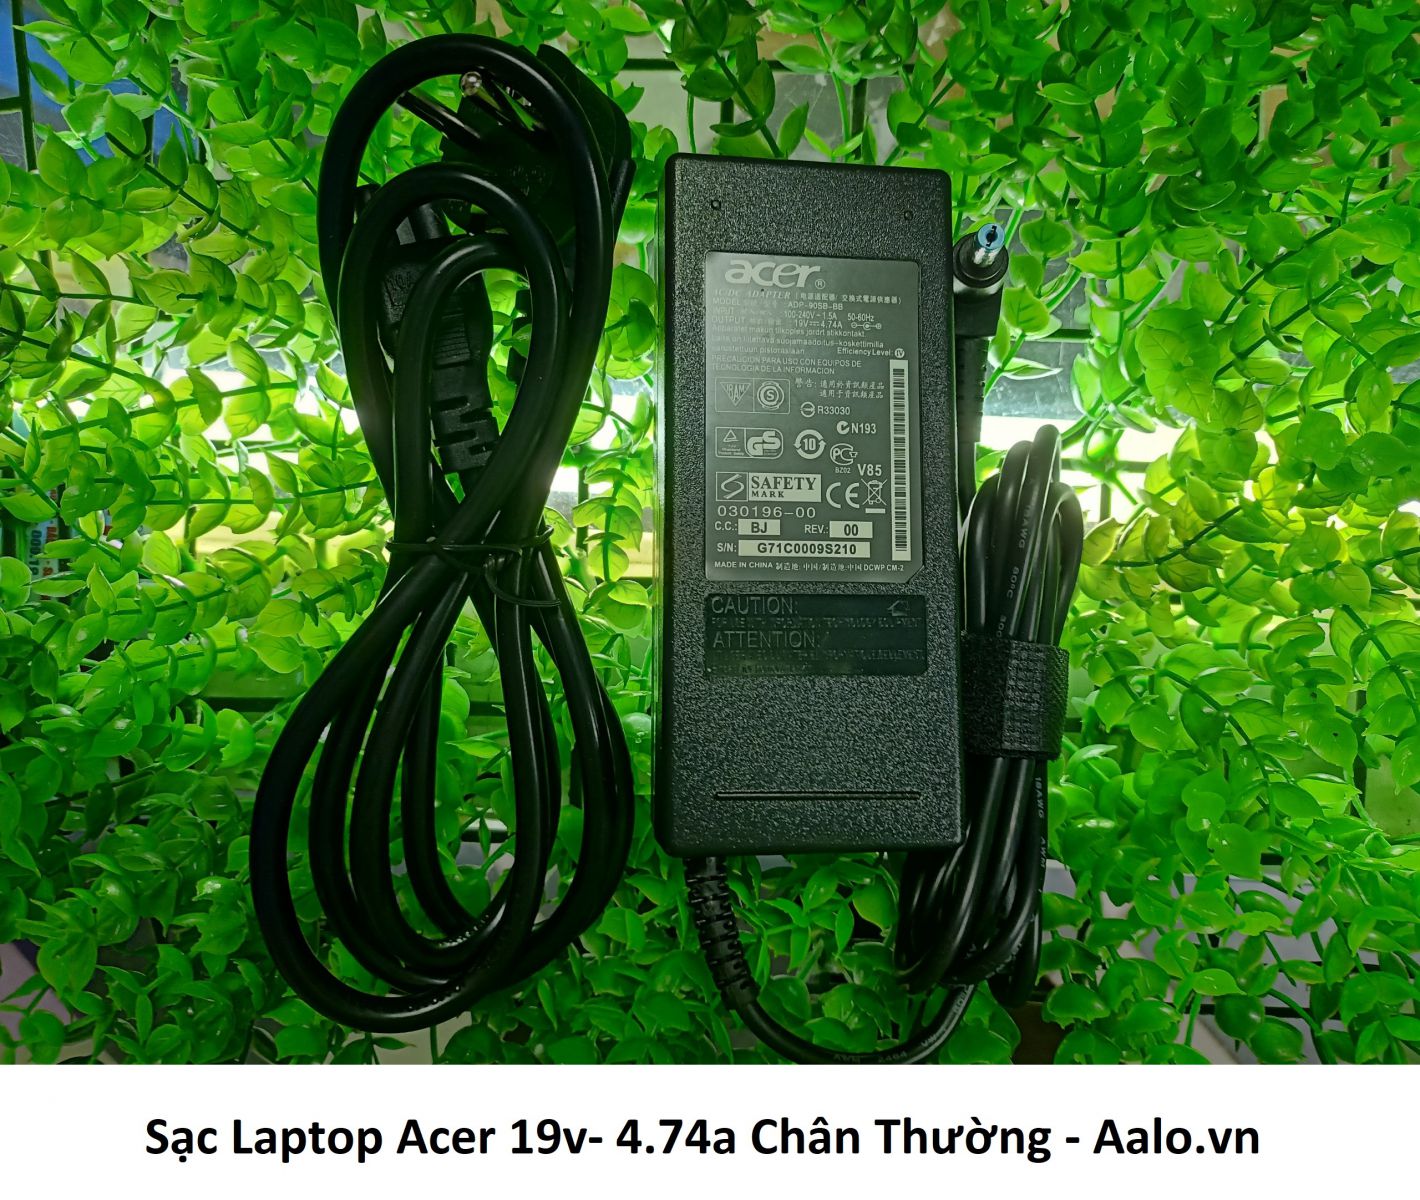 Sạc Laptop Acer 19v- 4.74a Chân Thường - Aalo.vn